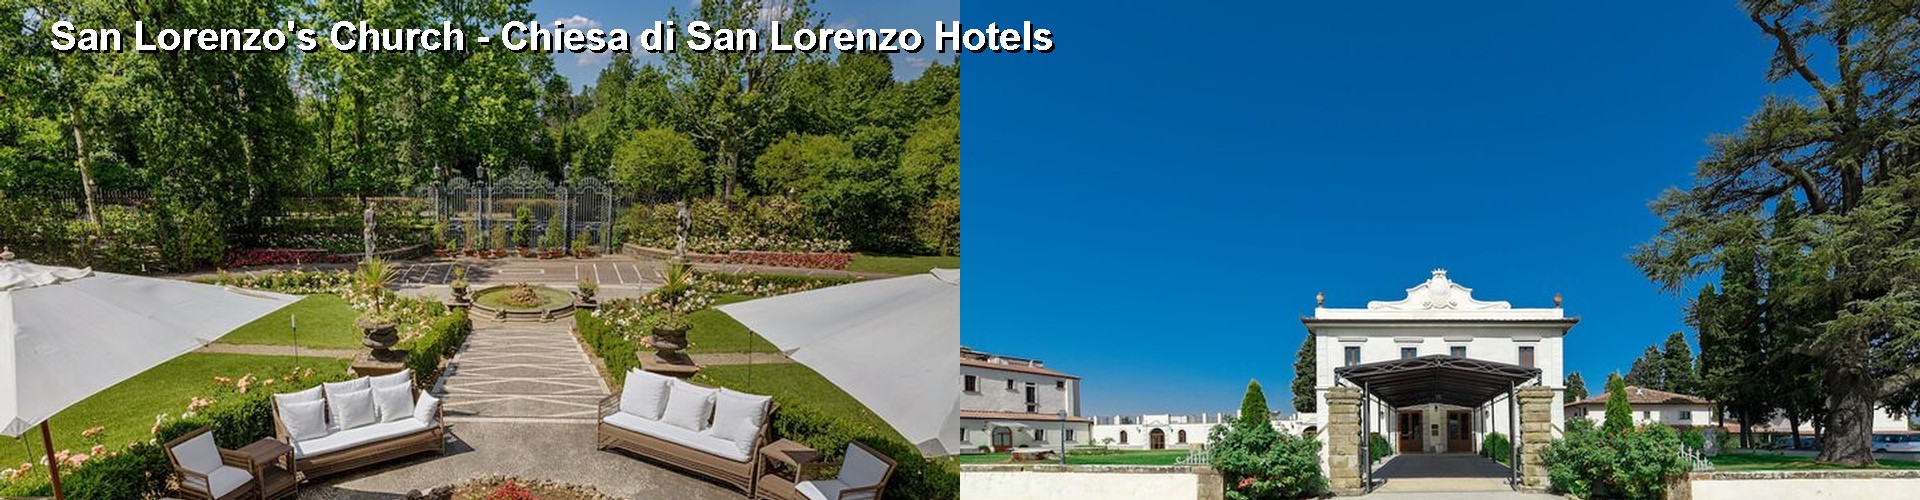 5 Best Hotels near San Lorenzo's Church - Chiesa di San Lorenzo